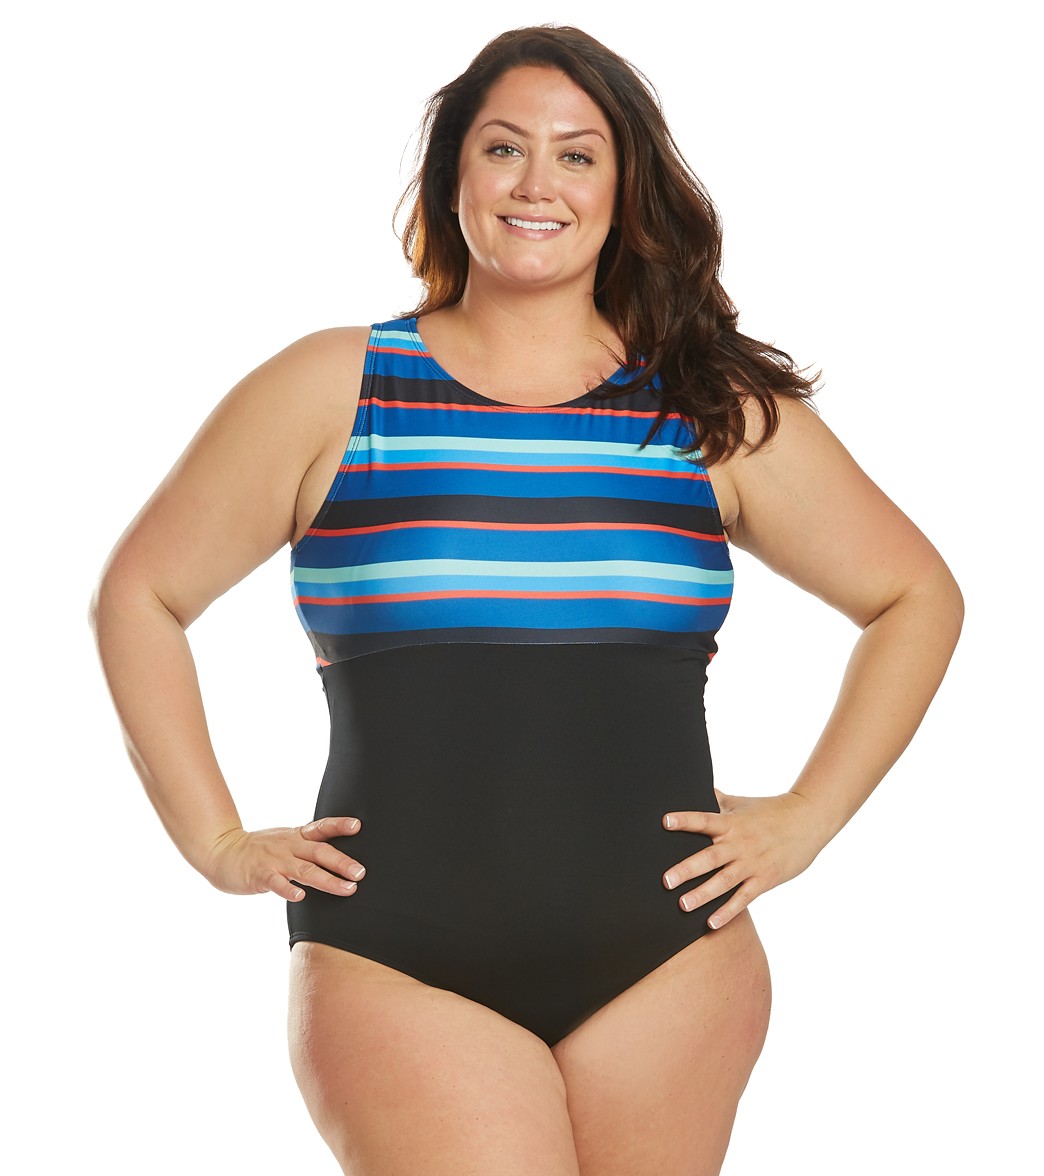 Dolfin Women's Plus Size Aquashape Multi Stripe High Neck Chlorine Resistant One Piece Swimsuit - Blue 16 - Swimoutlet.com